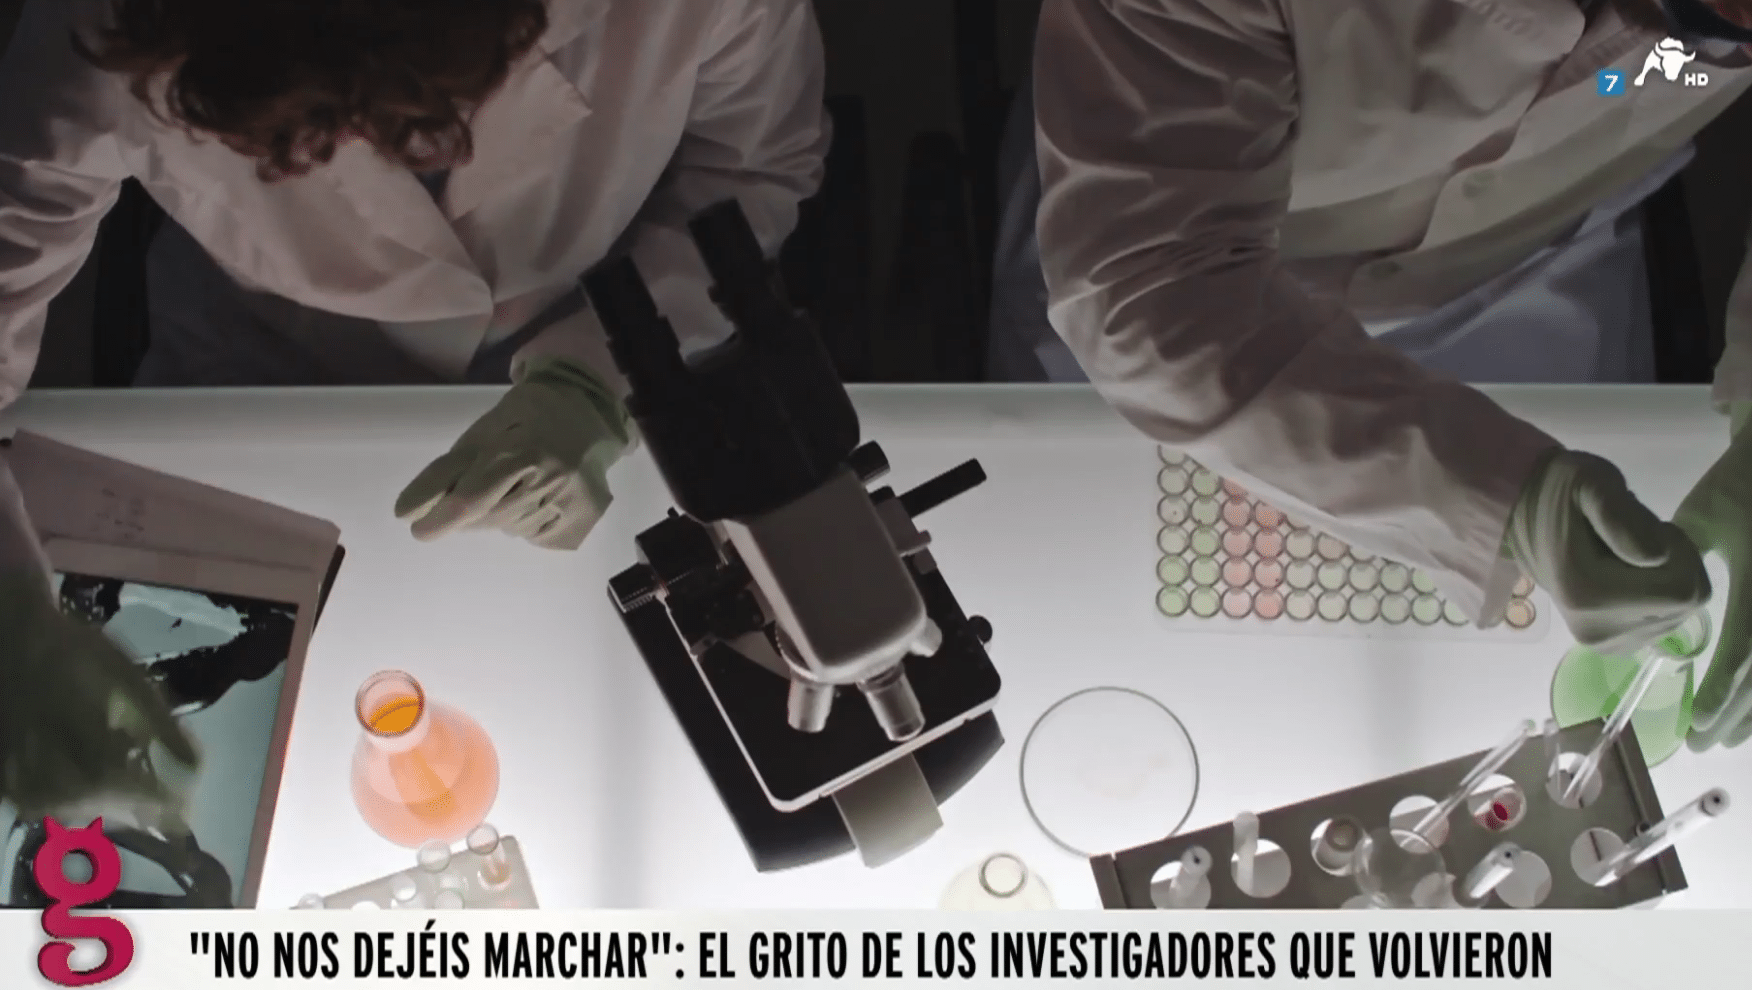 El Gobierno echa de España a los investigadores que volvieron engañados